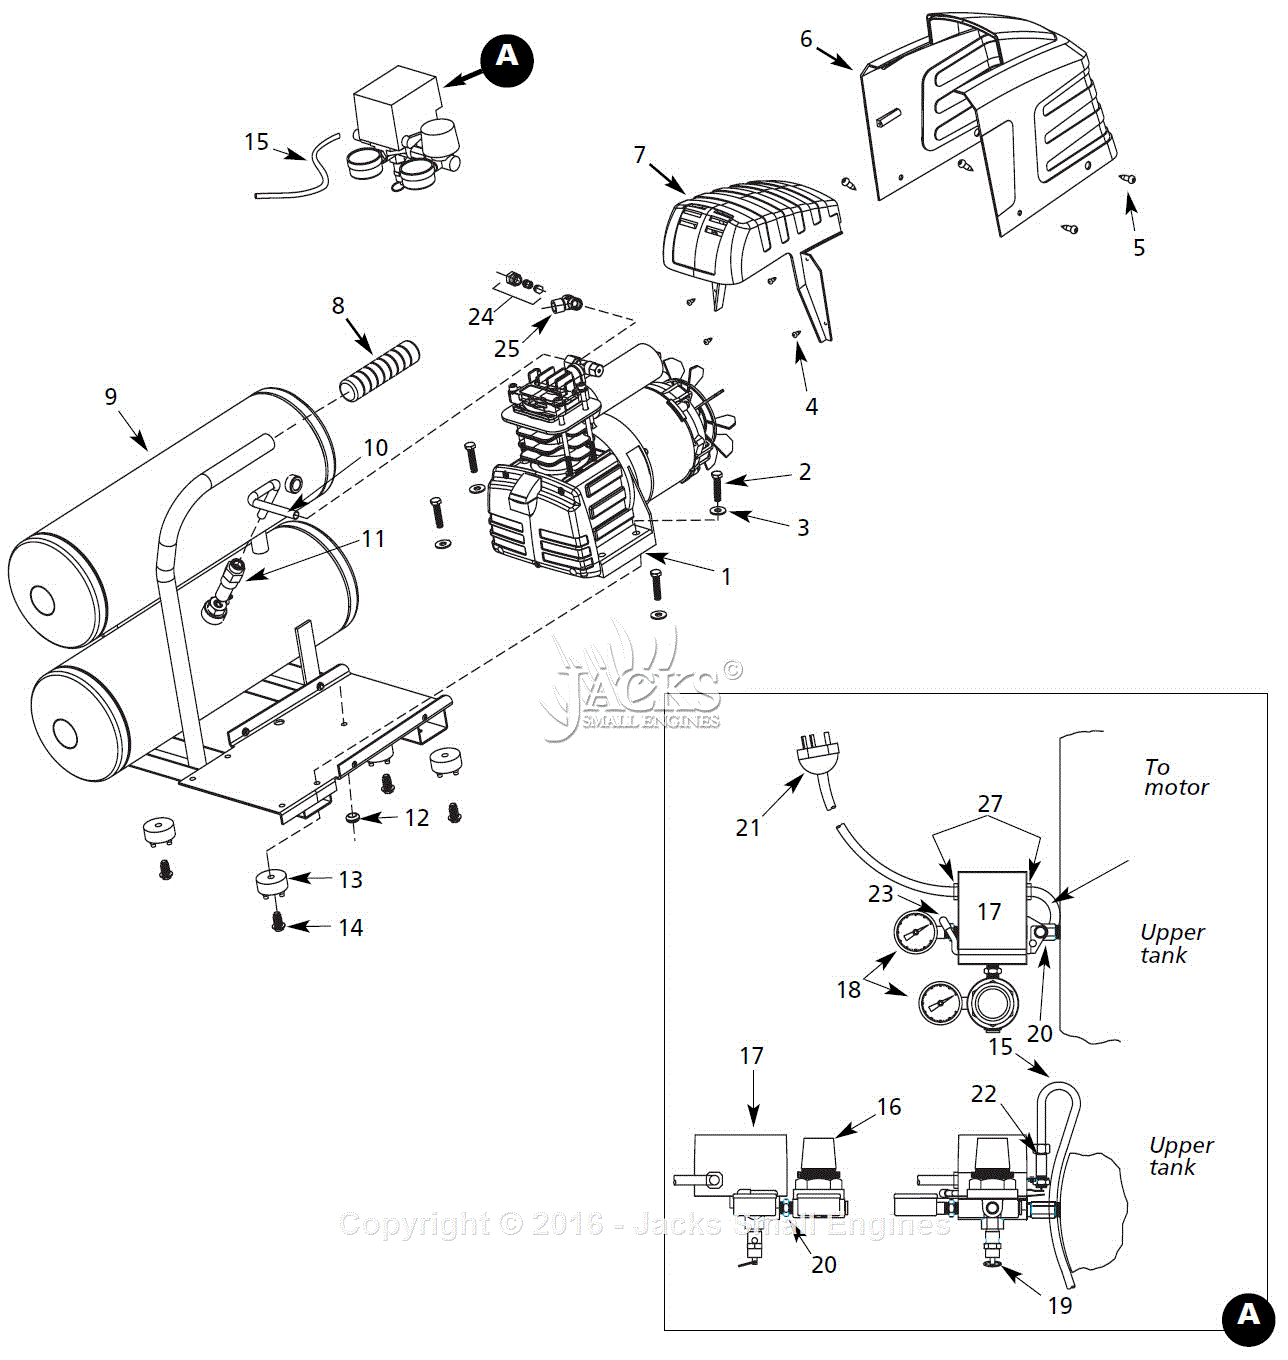 Campbell Hausfeld Air Compressor Parts Diagram Campbell Hausfeld Hl5502 Parts Diagram For Air Compressor Parts